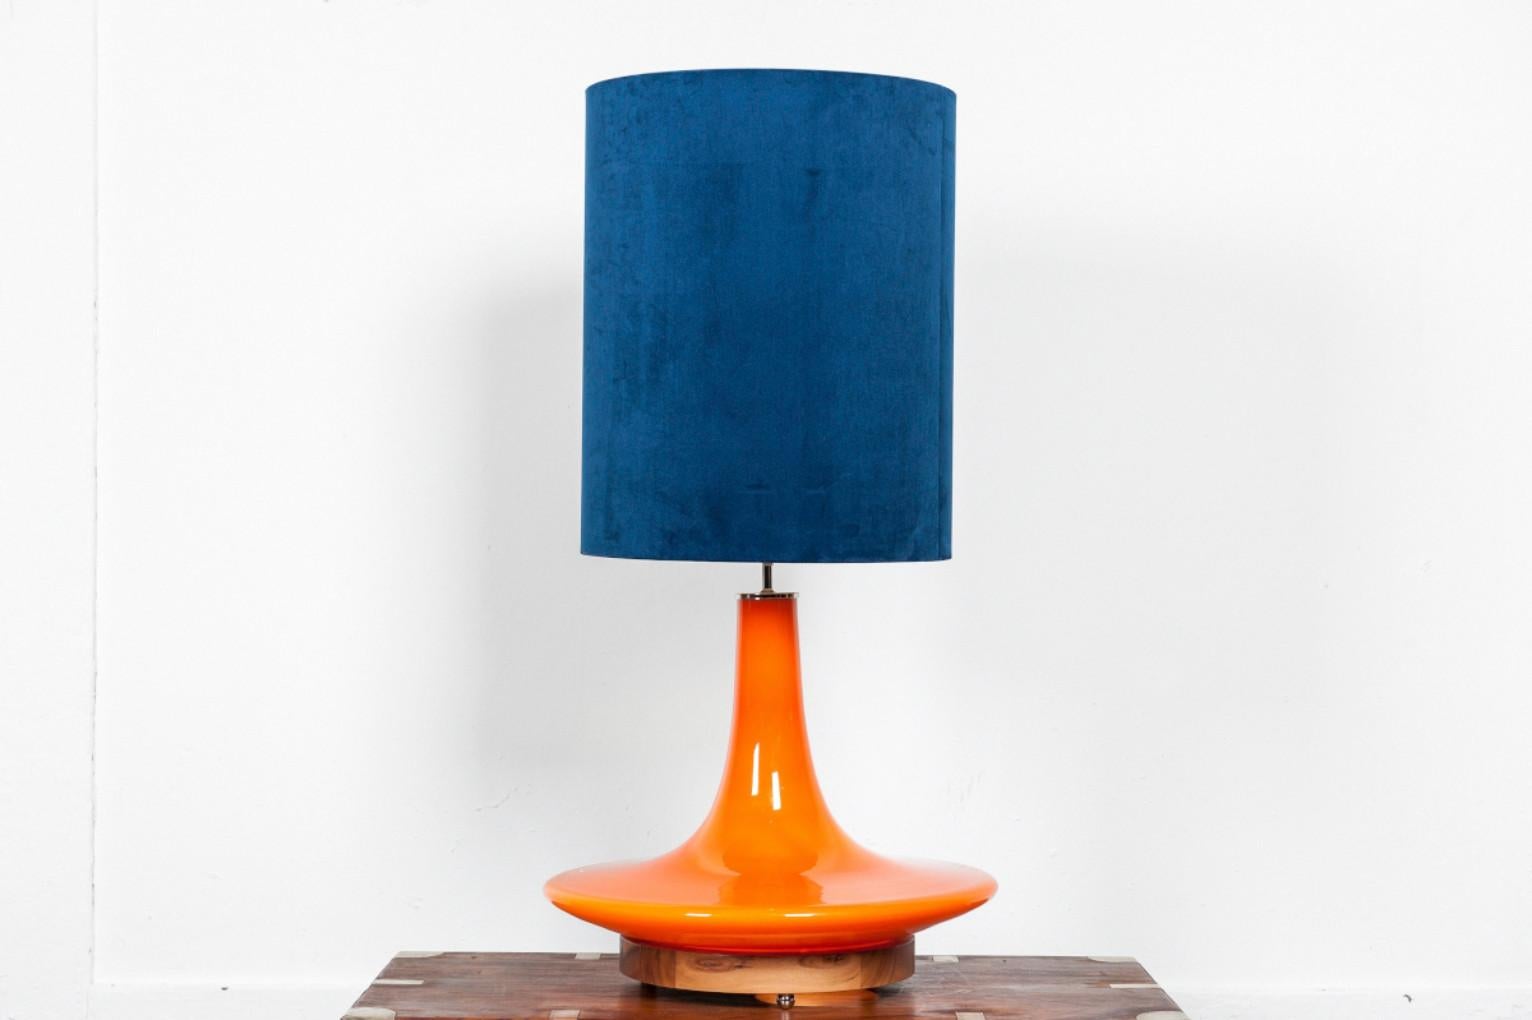 Grande lampe de table en verre orange conçue par Peill & Putzler, Allemagne.
Cette société a créé tant de beaux designs...
Ce modèle de 50 cm de diamètre était le plus grand de cette gamme de modèles.
C'était une lampe à suspension. Un